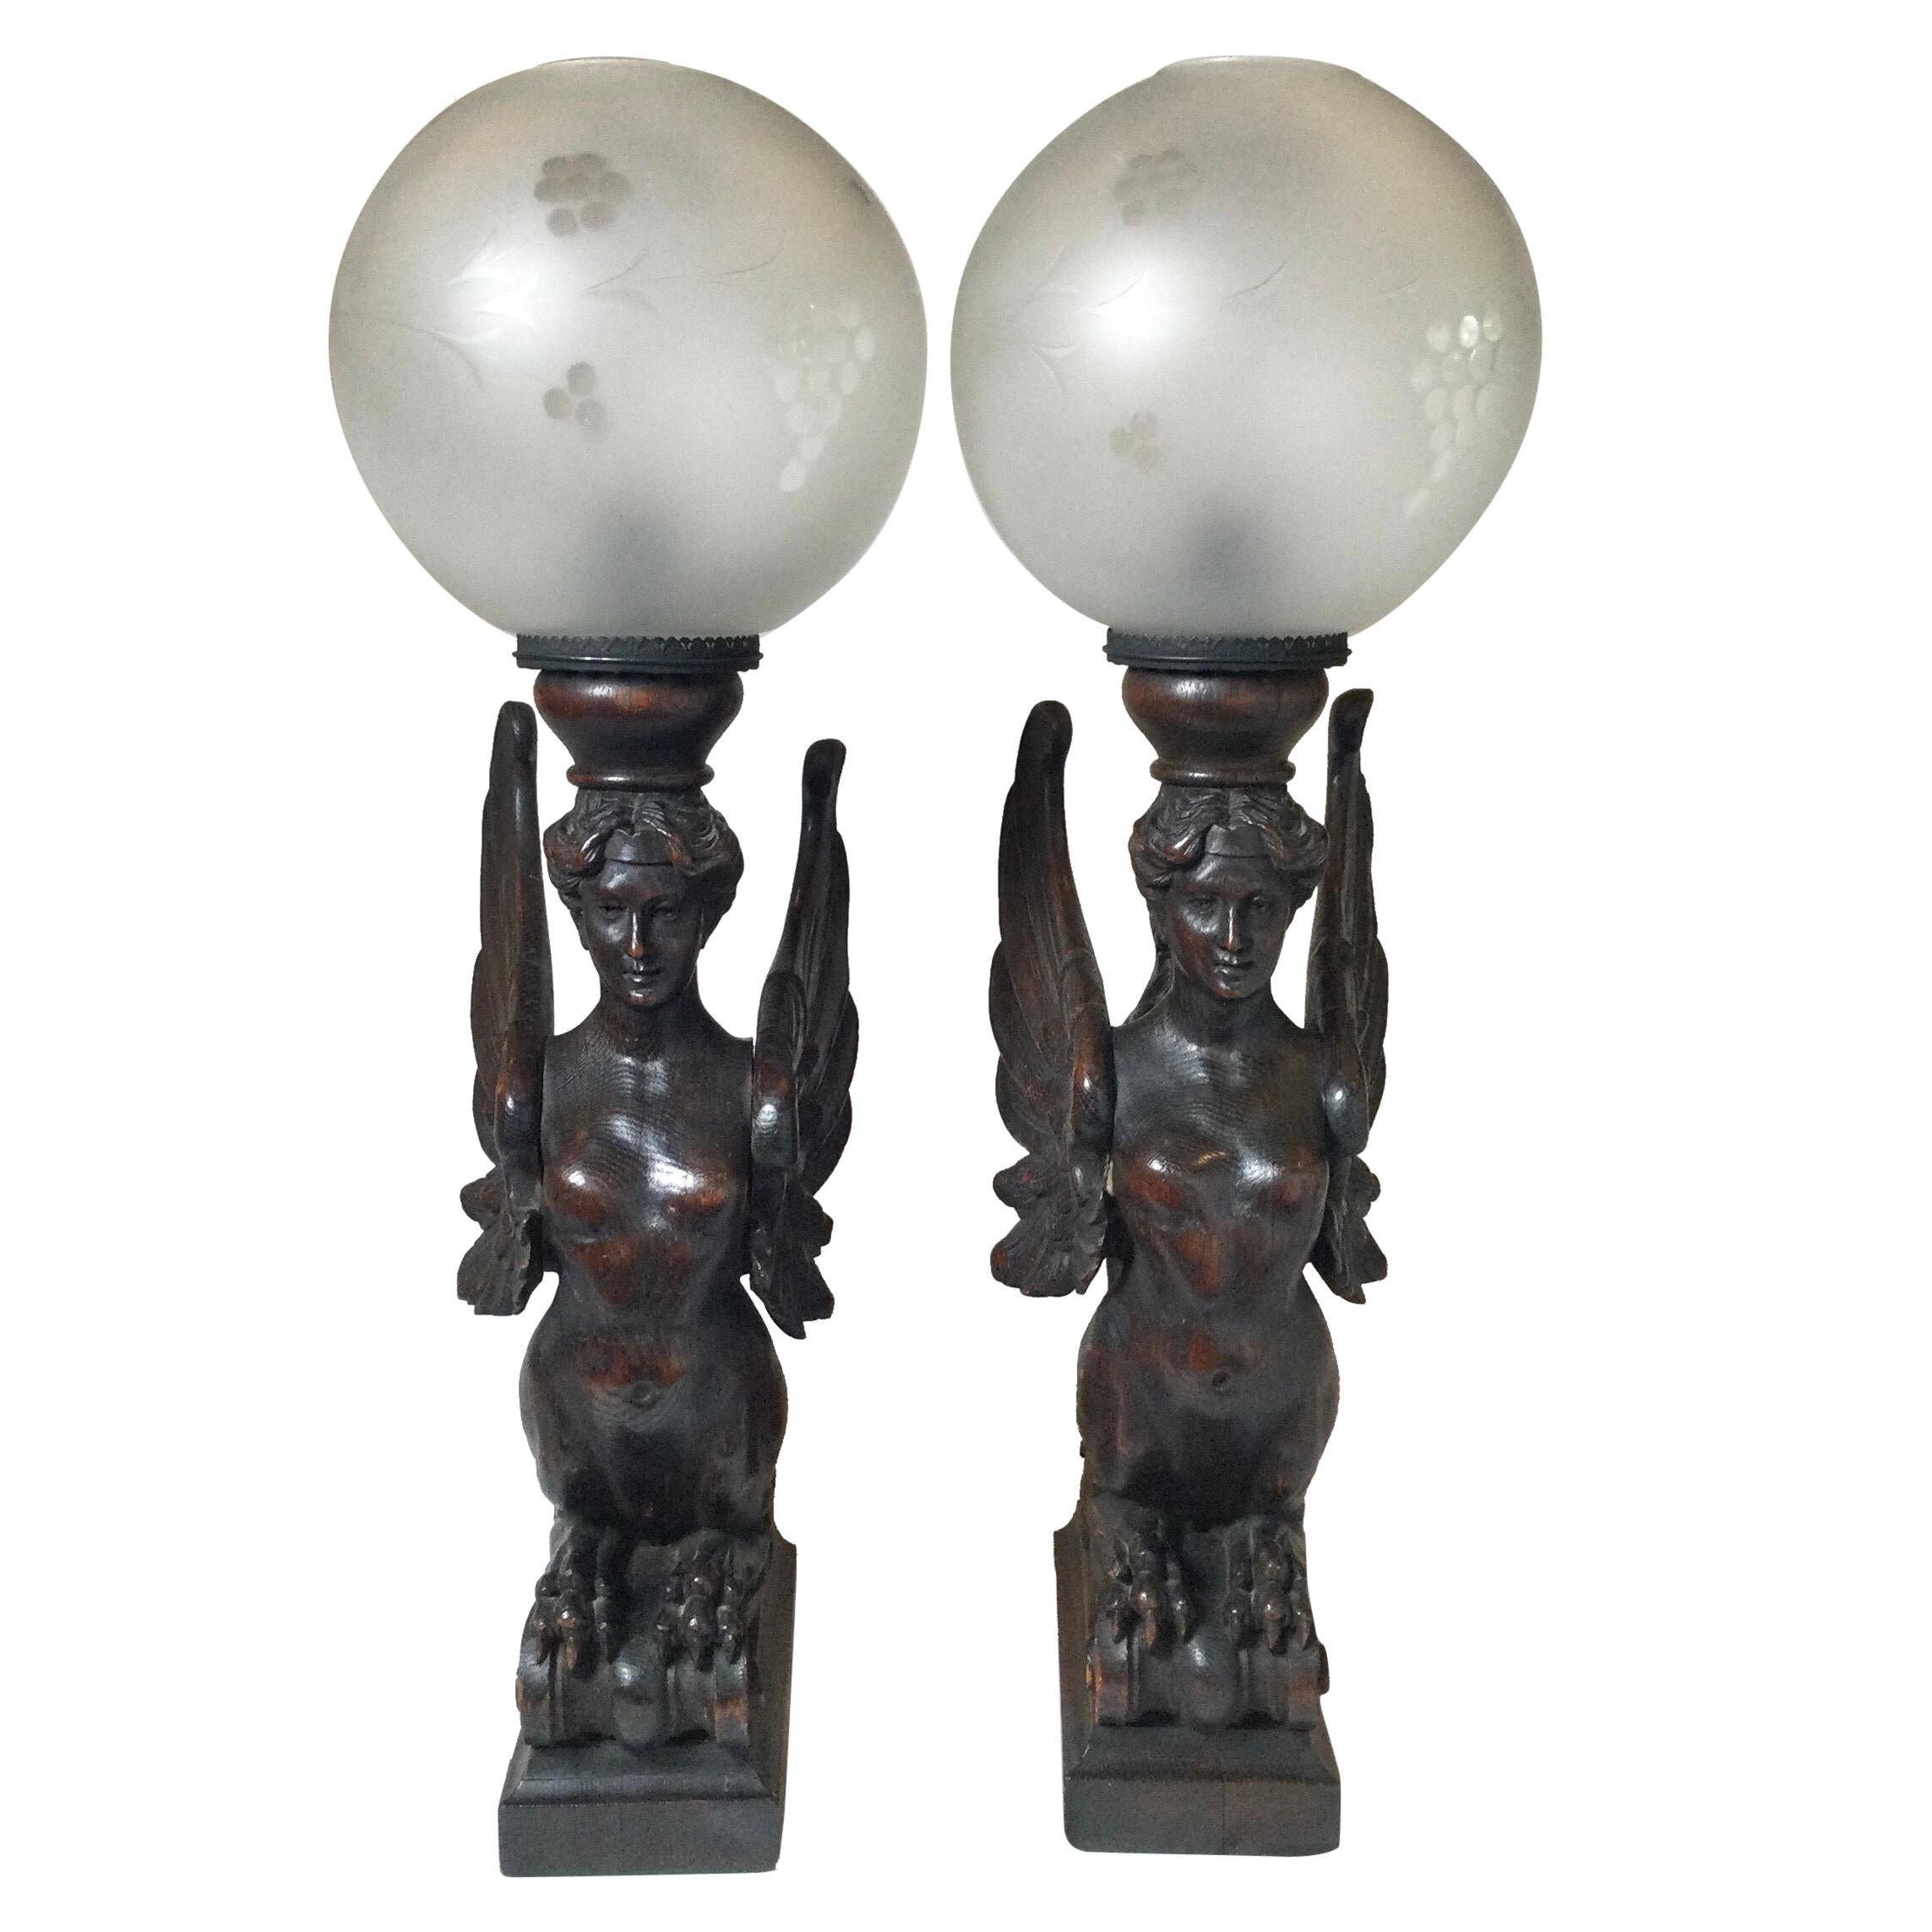 Paire de cariatides-griffins ailés en bois sculptés à la main datant d'environ 1880, transformées aujourd'hui en lampes